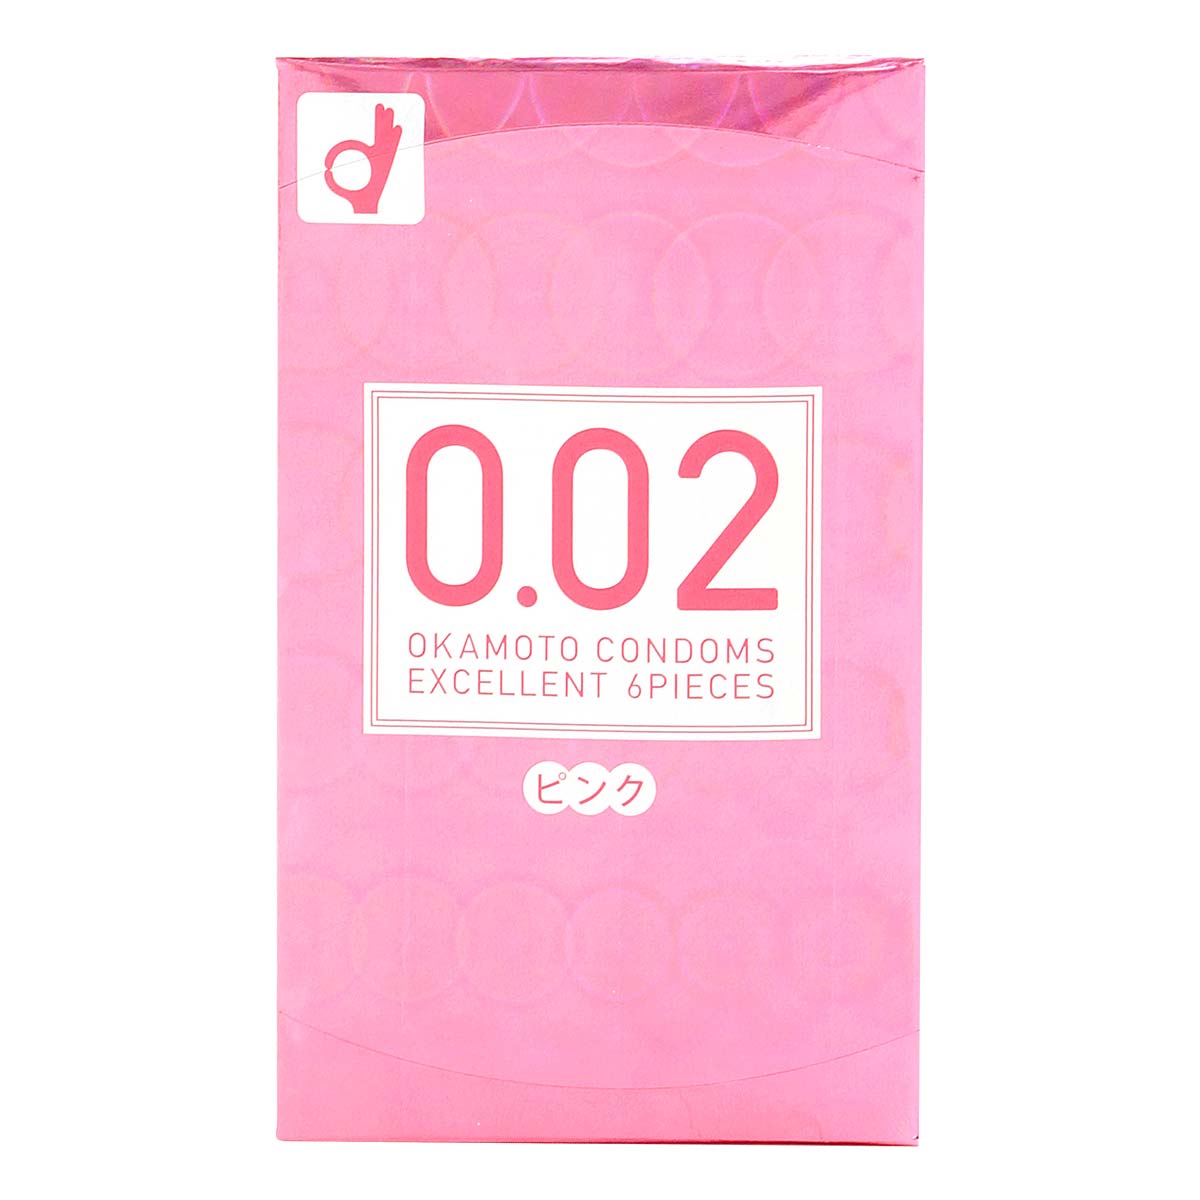 冈本 薄度均一 0.02EX (日本版) 粉红色系 6 片装 聚氨酯安全套-p_2